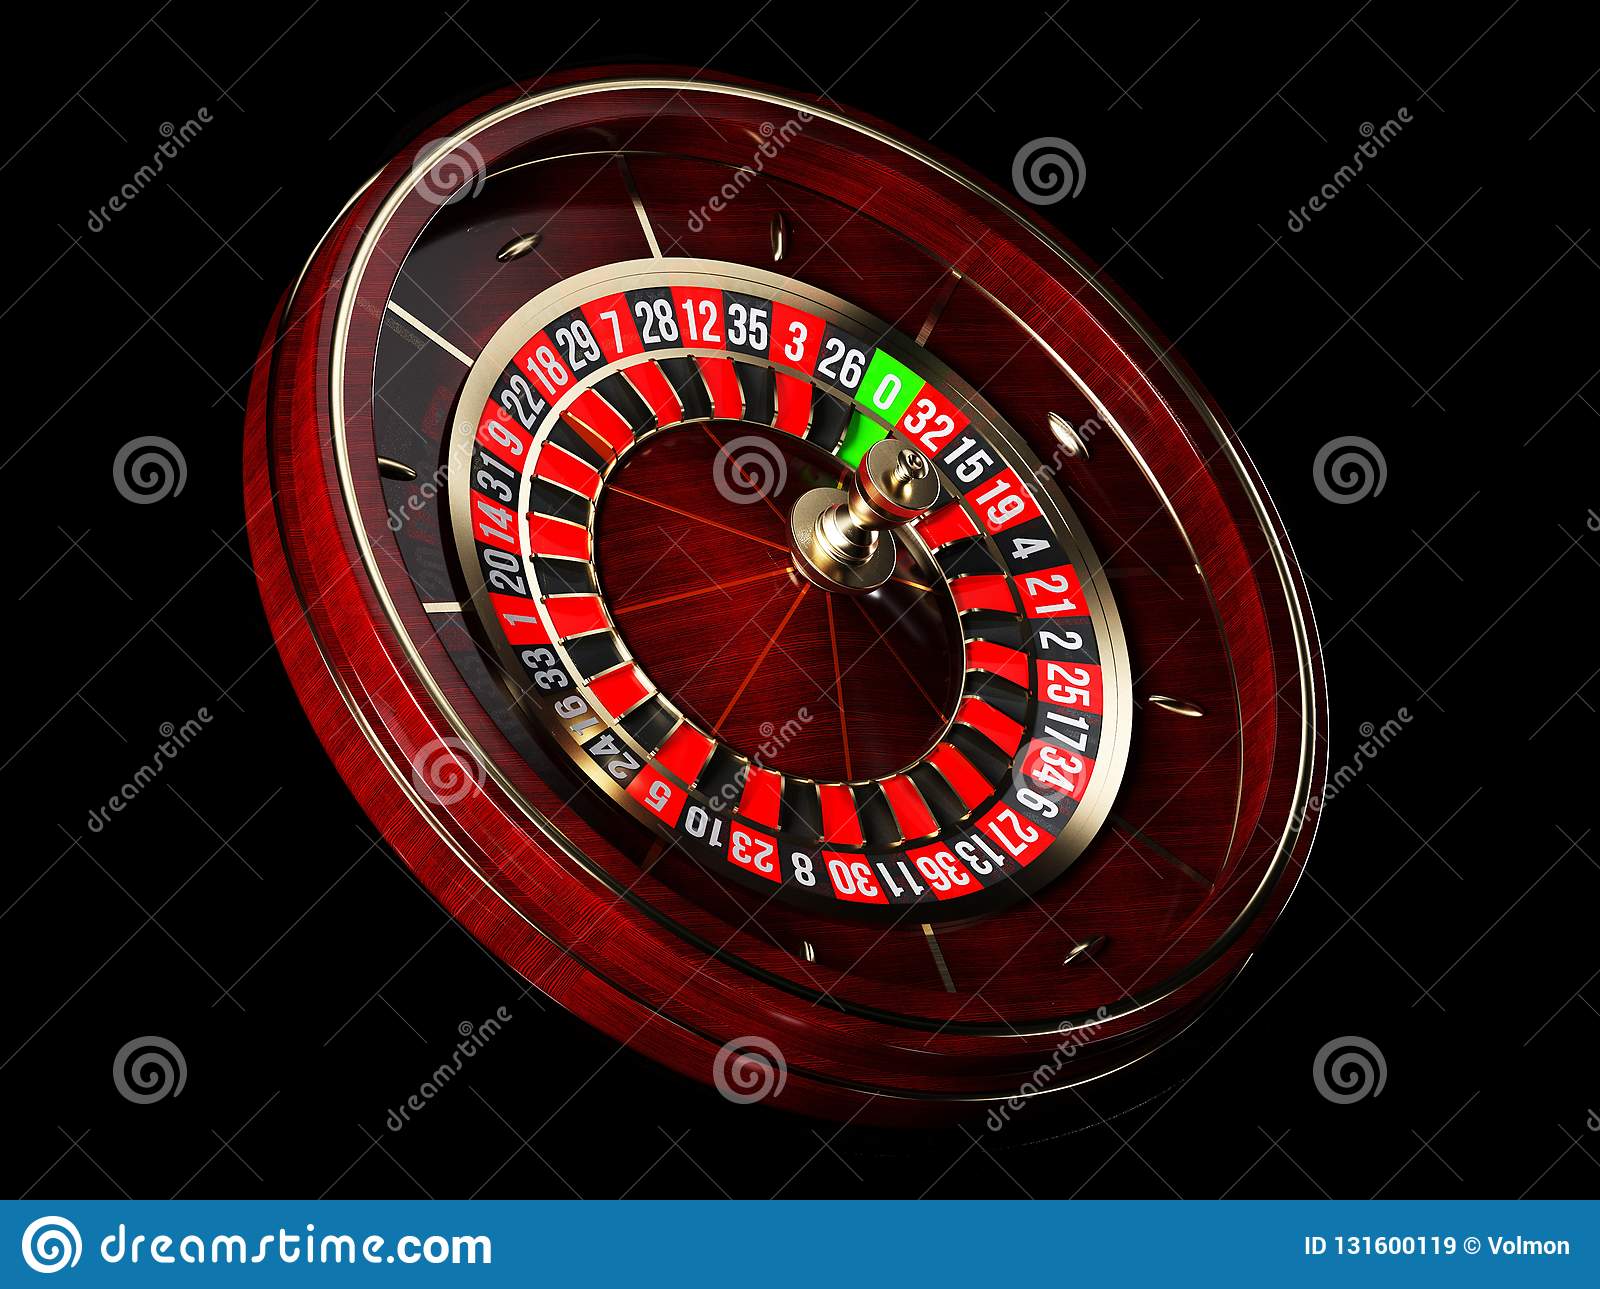 Играть в казино русская рулетка